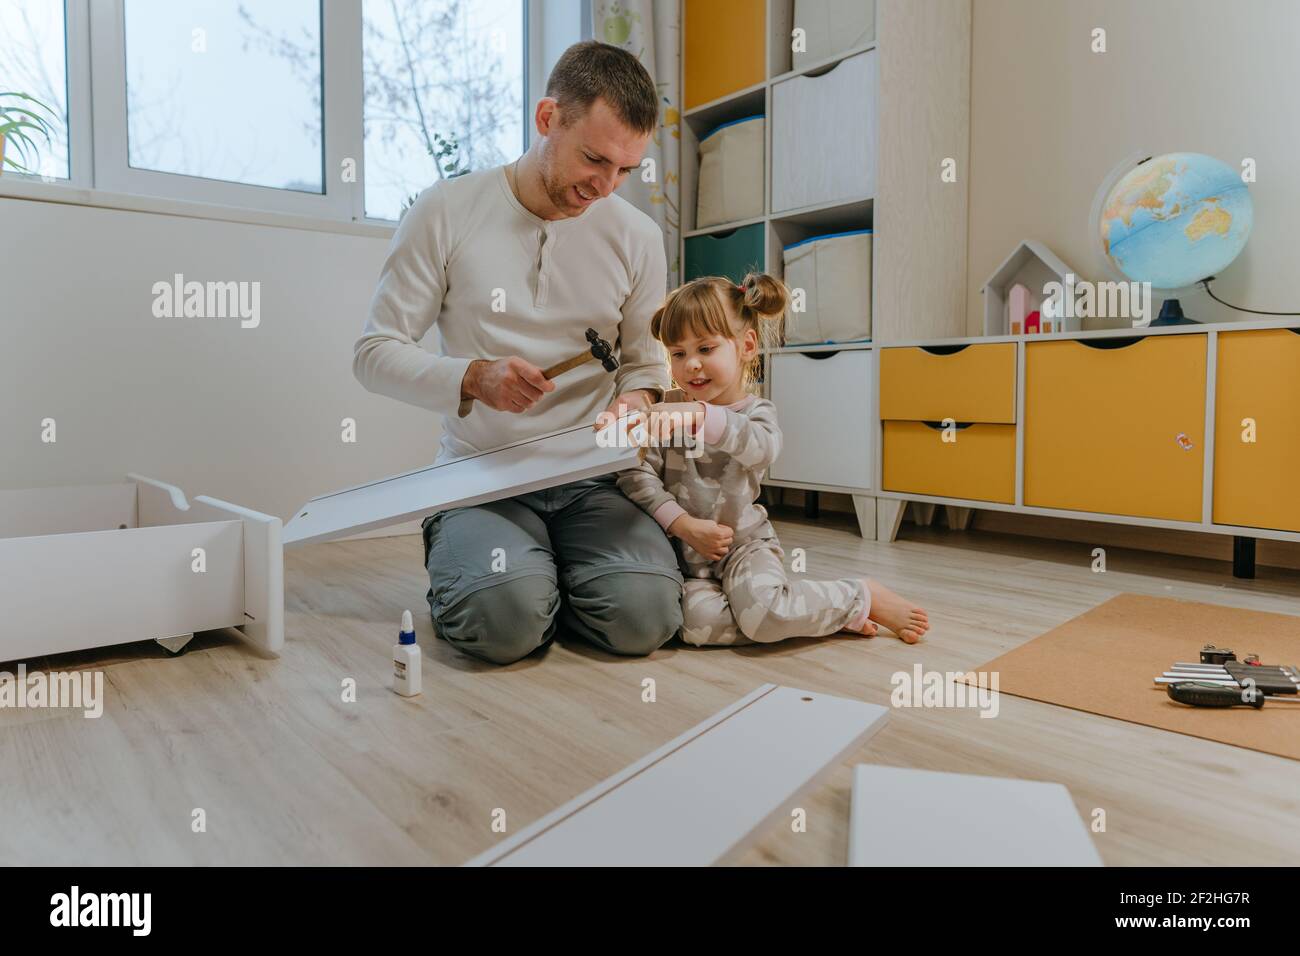 Kleines 4-jähriges Mädchen, das ihrem Vater hilft, das Kinderbett mit einem kleinen Hammer im Kinderzimmer zusammenzustellen. Stockfoto